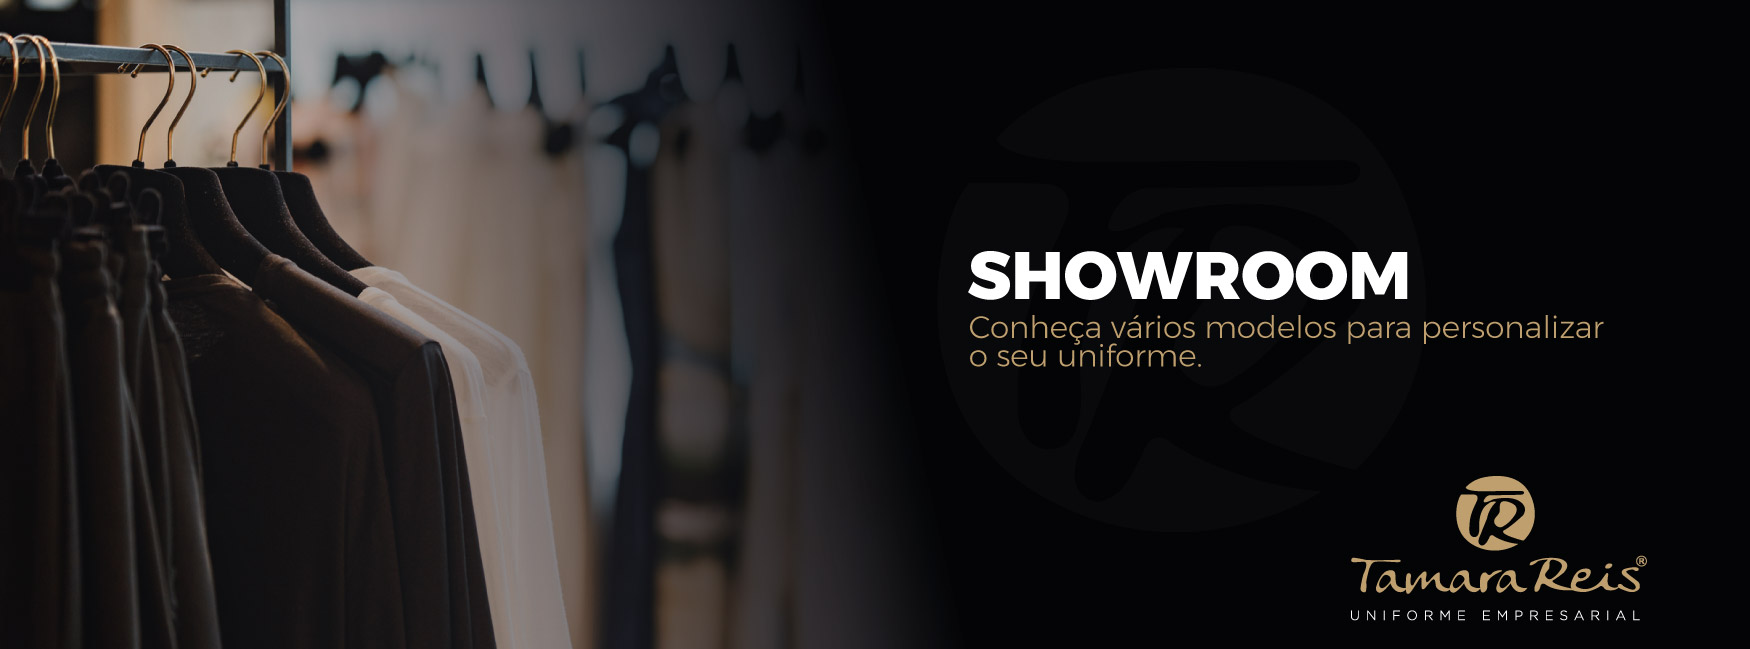 Showroom - Conheça vários modelos para personalizar o seu uniforme.